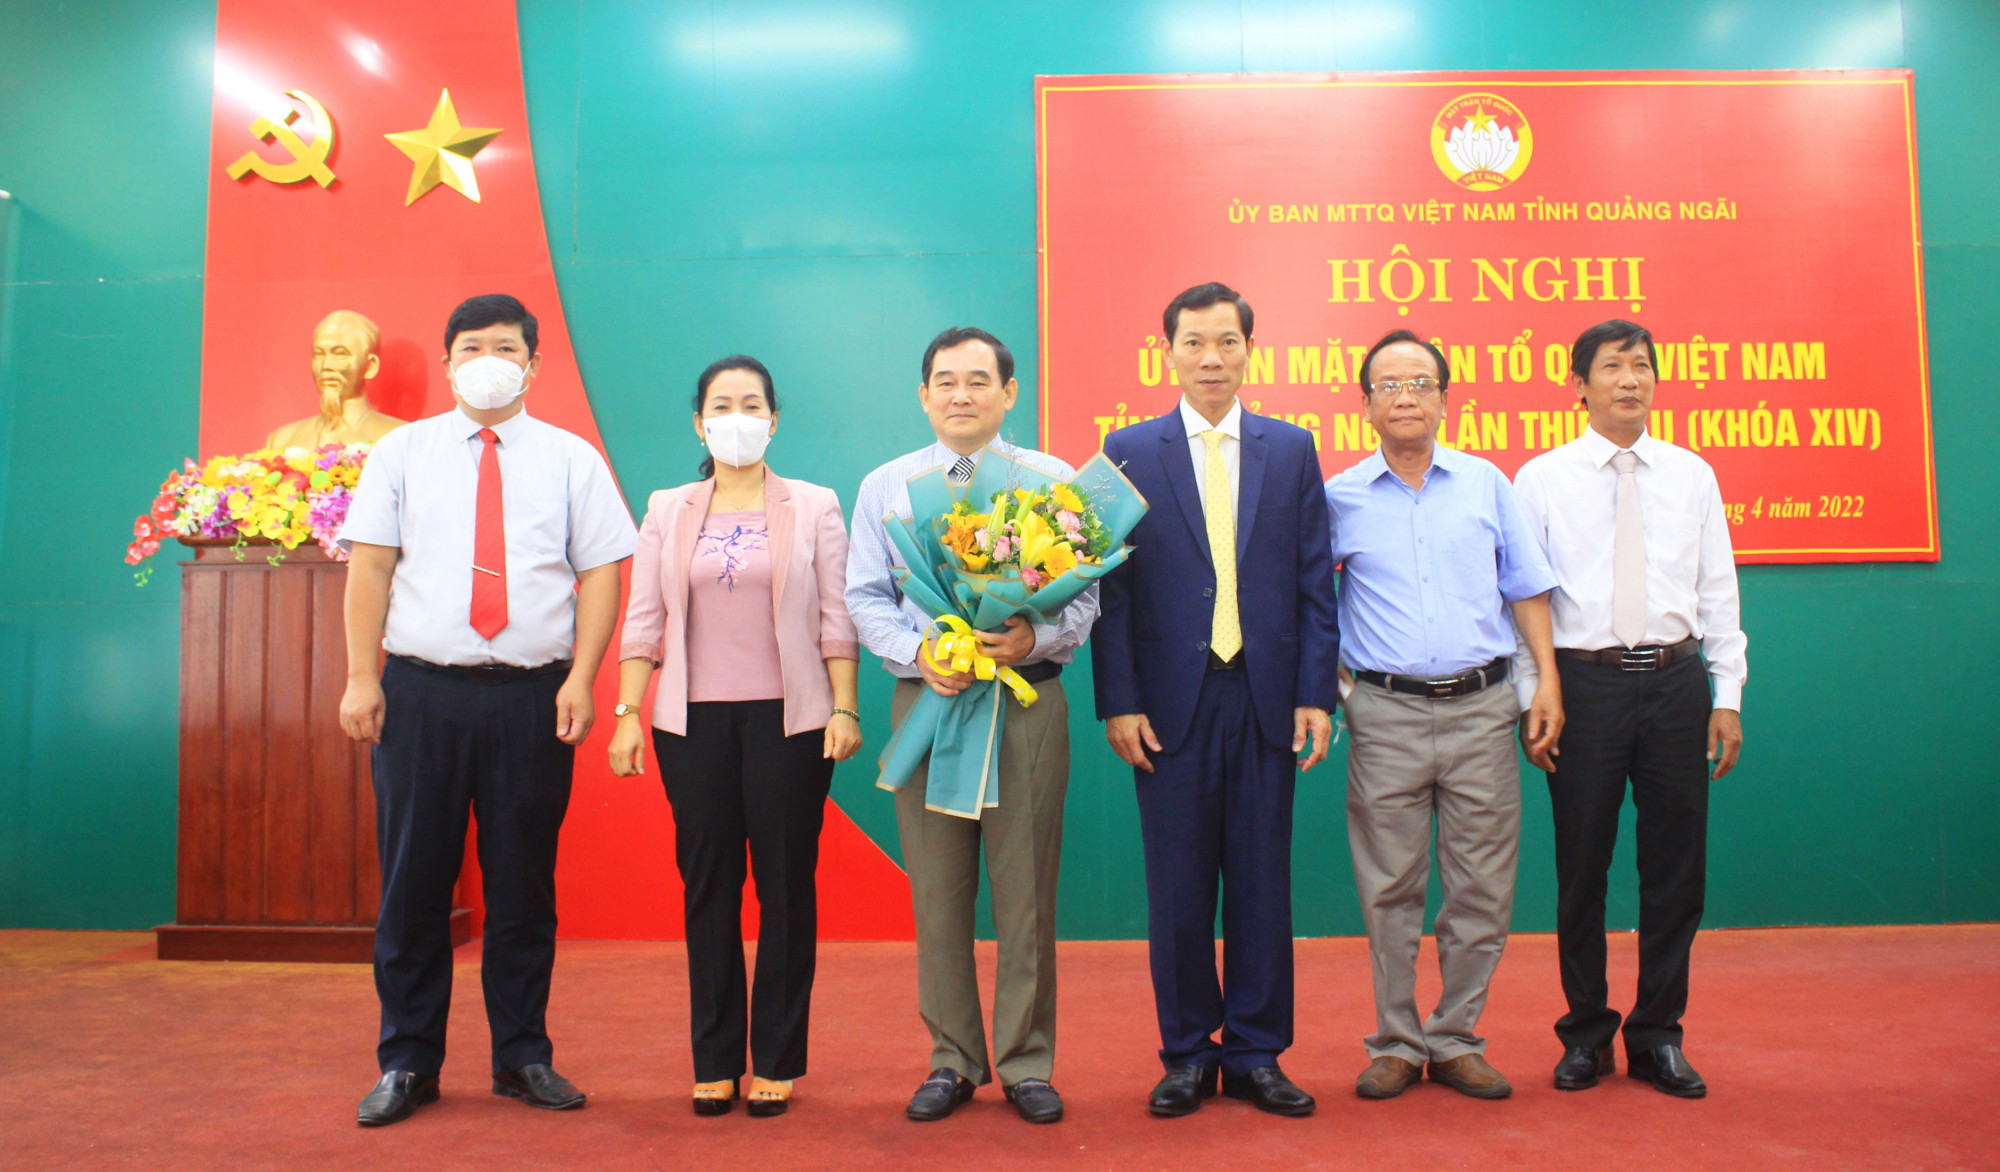 ông Nguyễn Xuân Mến, Tỉnh ủy viên, nguyên Giám đốc Sở Y tế giữ chức Phó Chủ tịch Ủy ban MTTQ Việt Nam tỉnh Quảng Ngãi, khóa XIV, nhiệm kỳ 2019-2024.